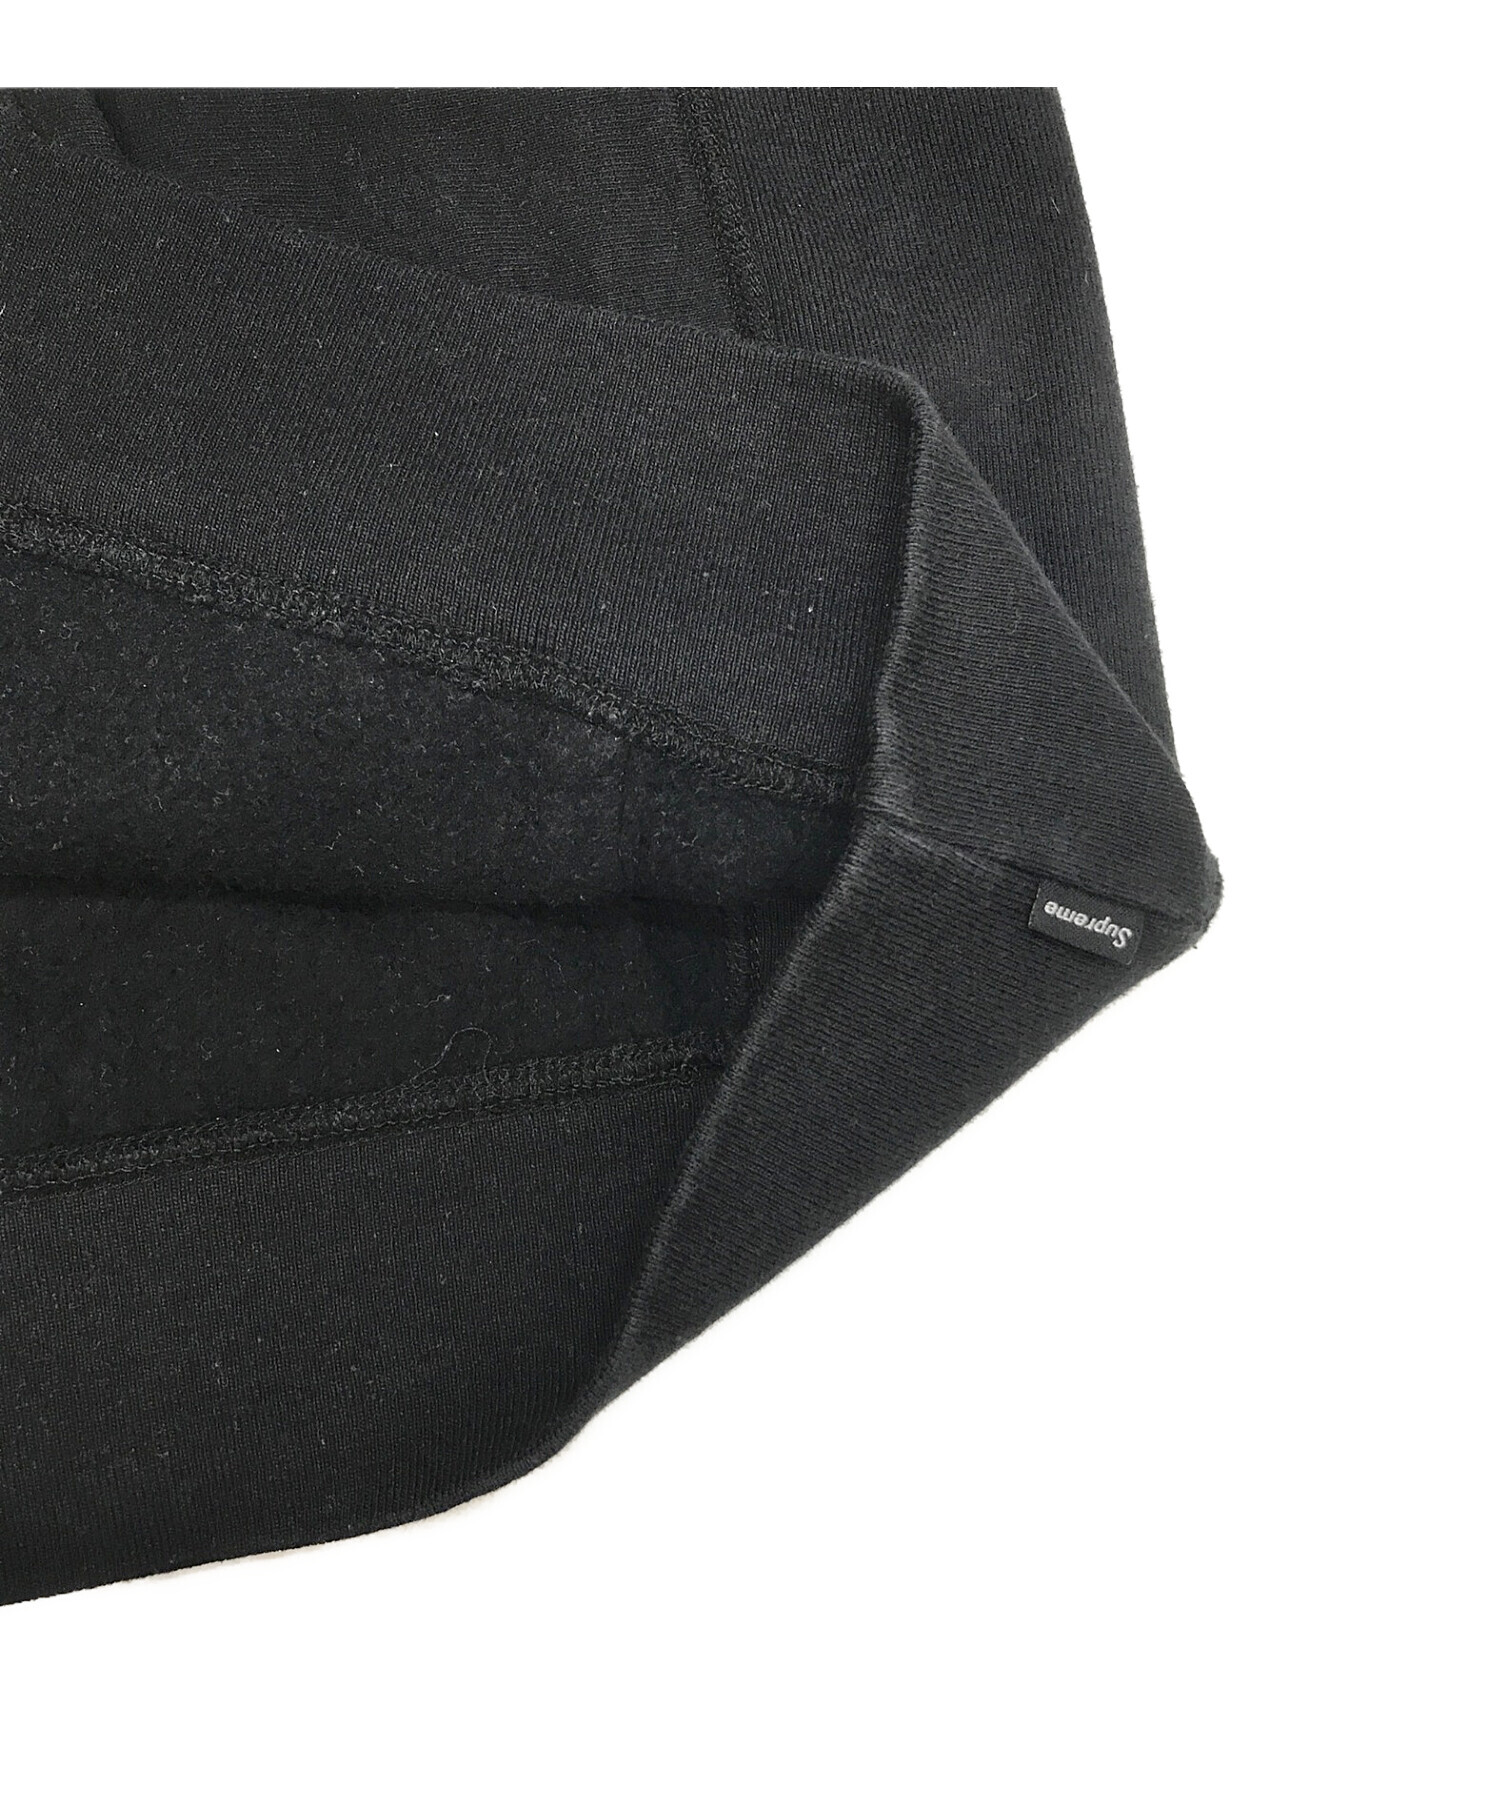 SUPREME (シュプリーム) Apple Hooded Sweatshirt ブラック サイズ:M